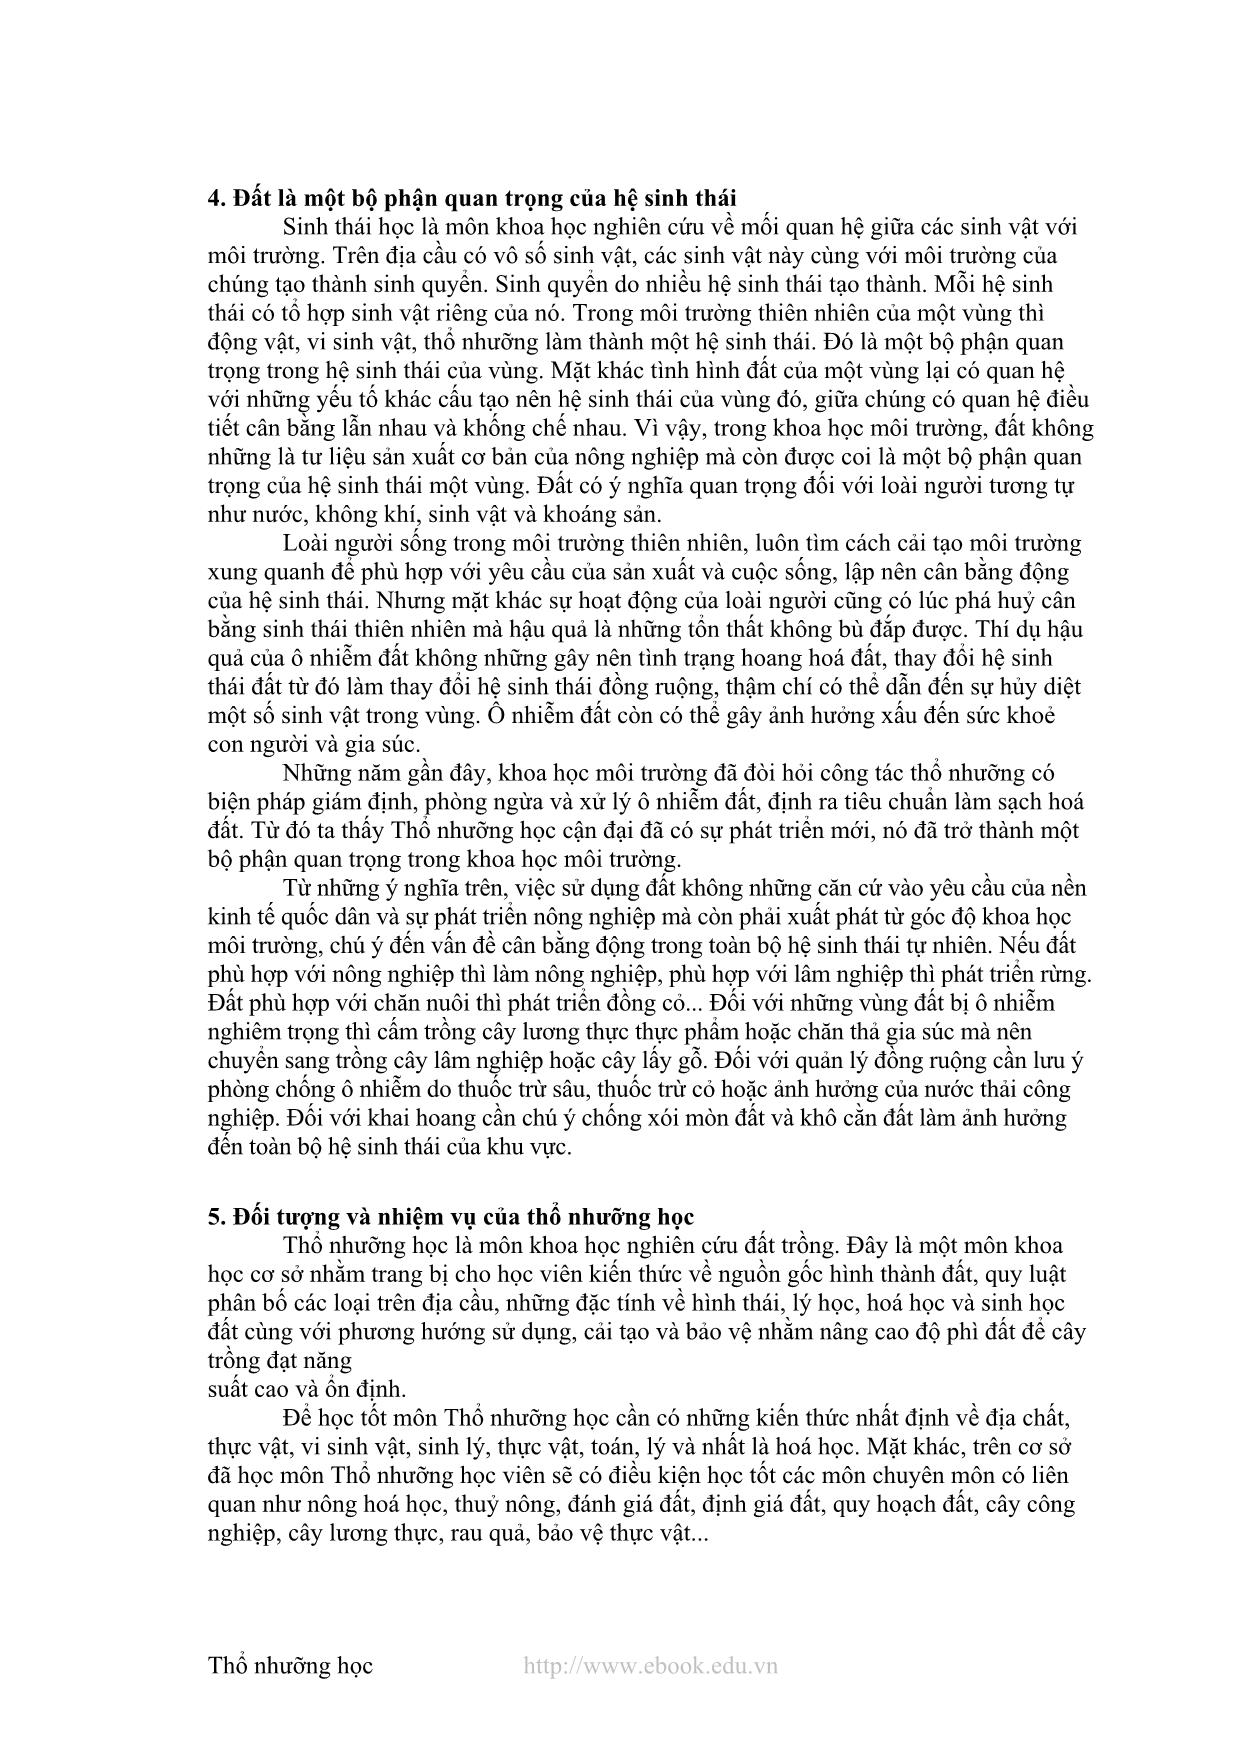 Giáo trình Thổ nhưỡng học (Phần 1) trang 5